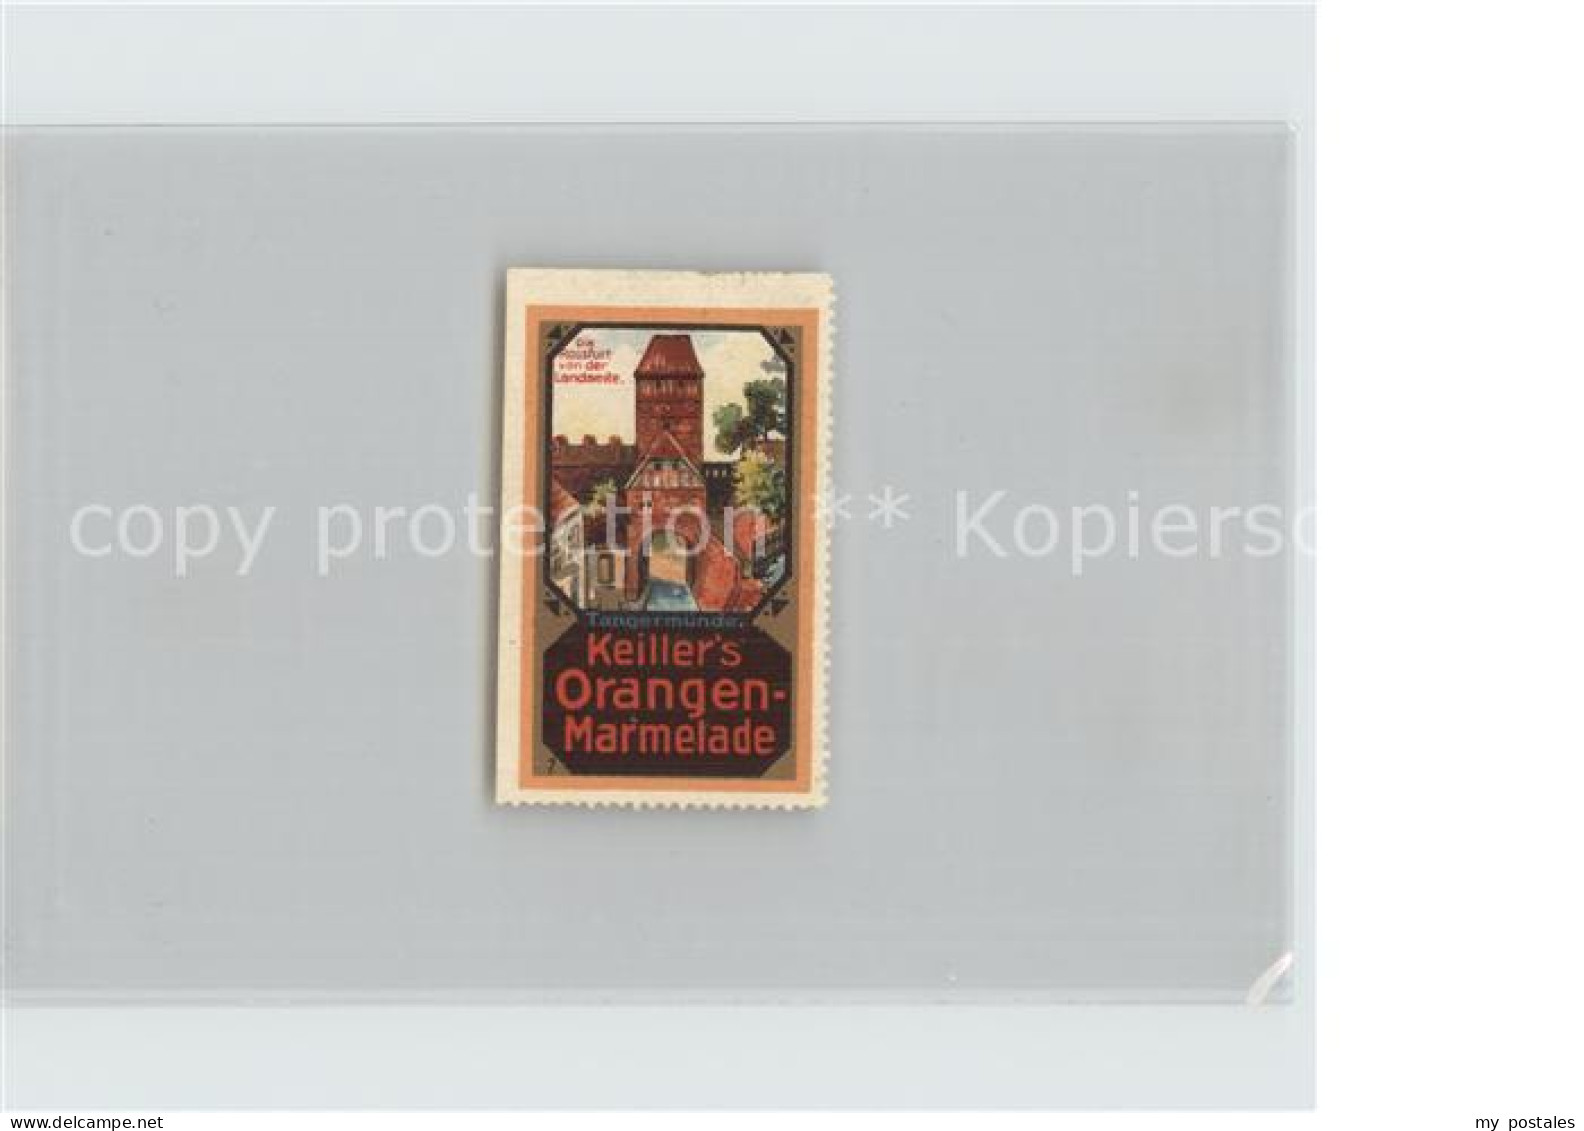 42454507 Tangermuende Rossfurt Keillers Orangen-Marmelade  Tangermuende - Tangermuende